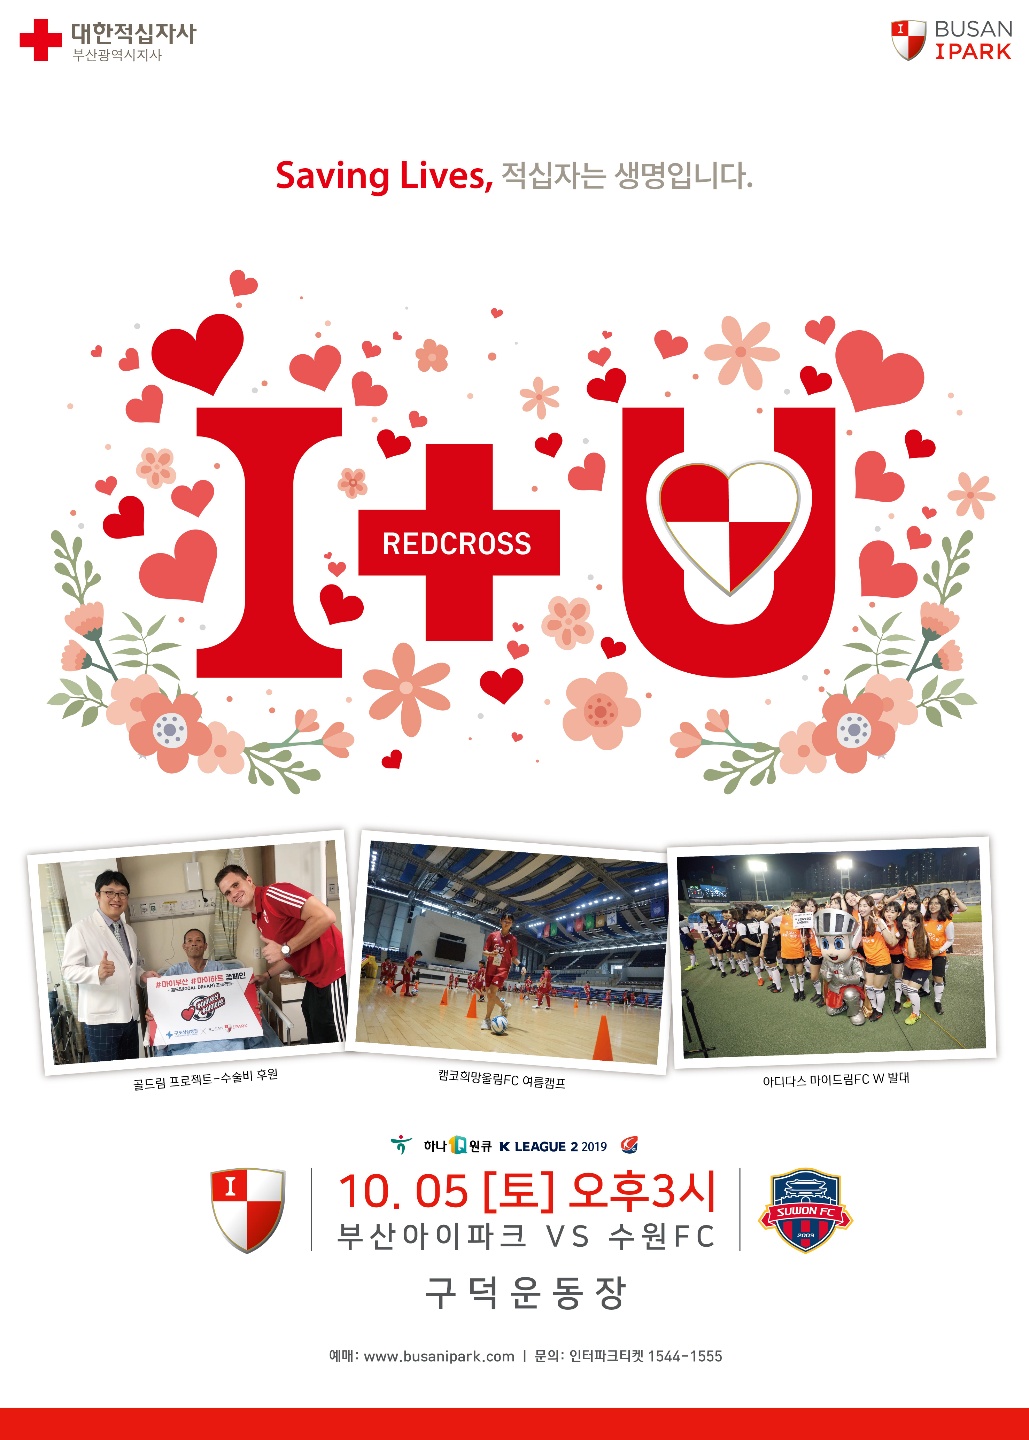 부산아이파크축구단과 함께하는 I RedCross U